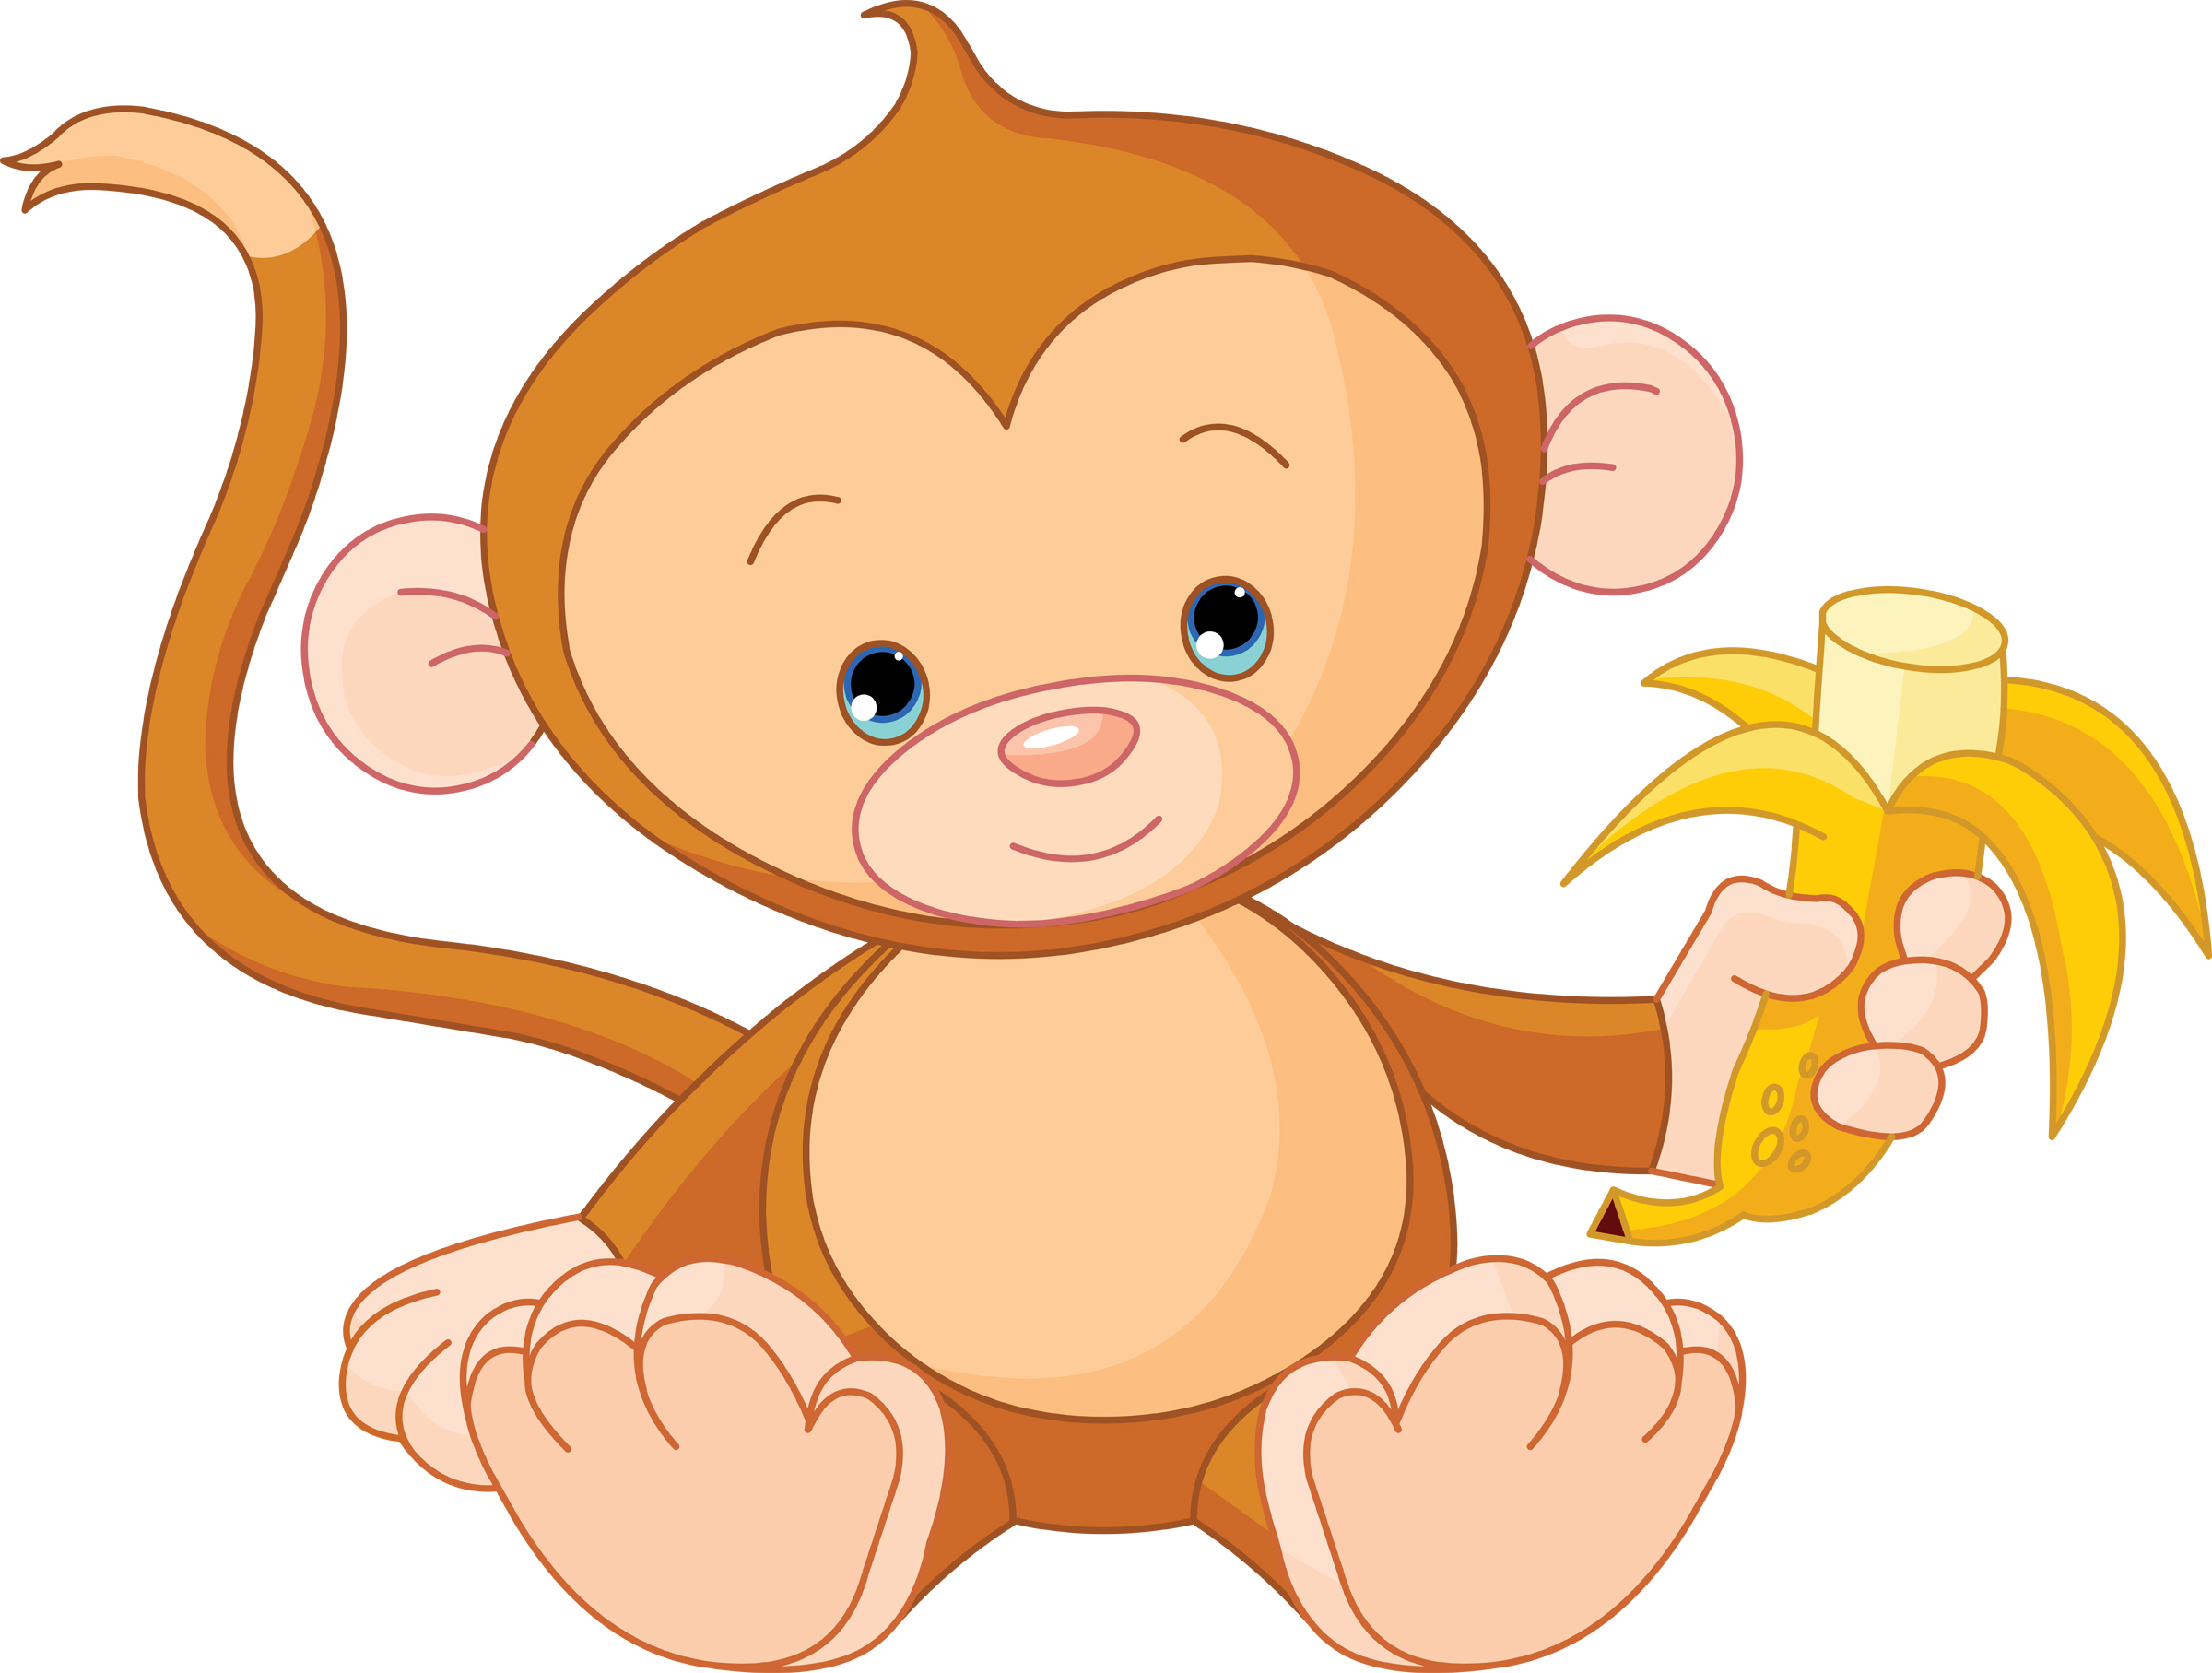 monkey_banana.jpg